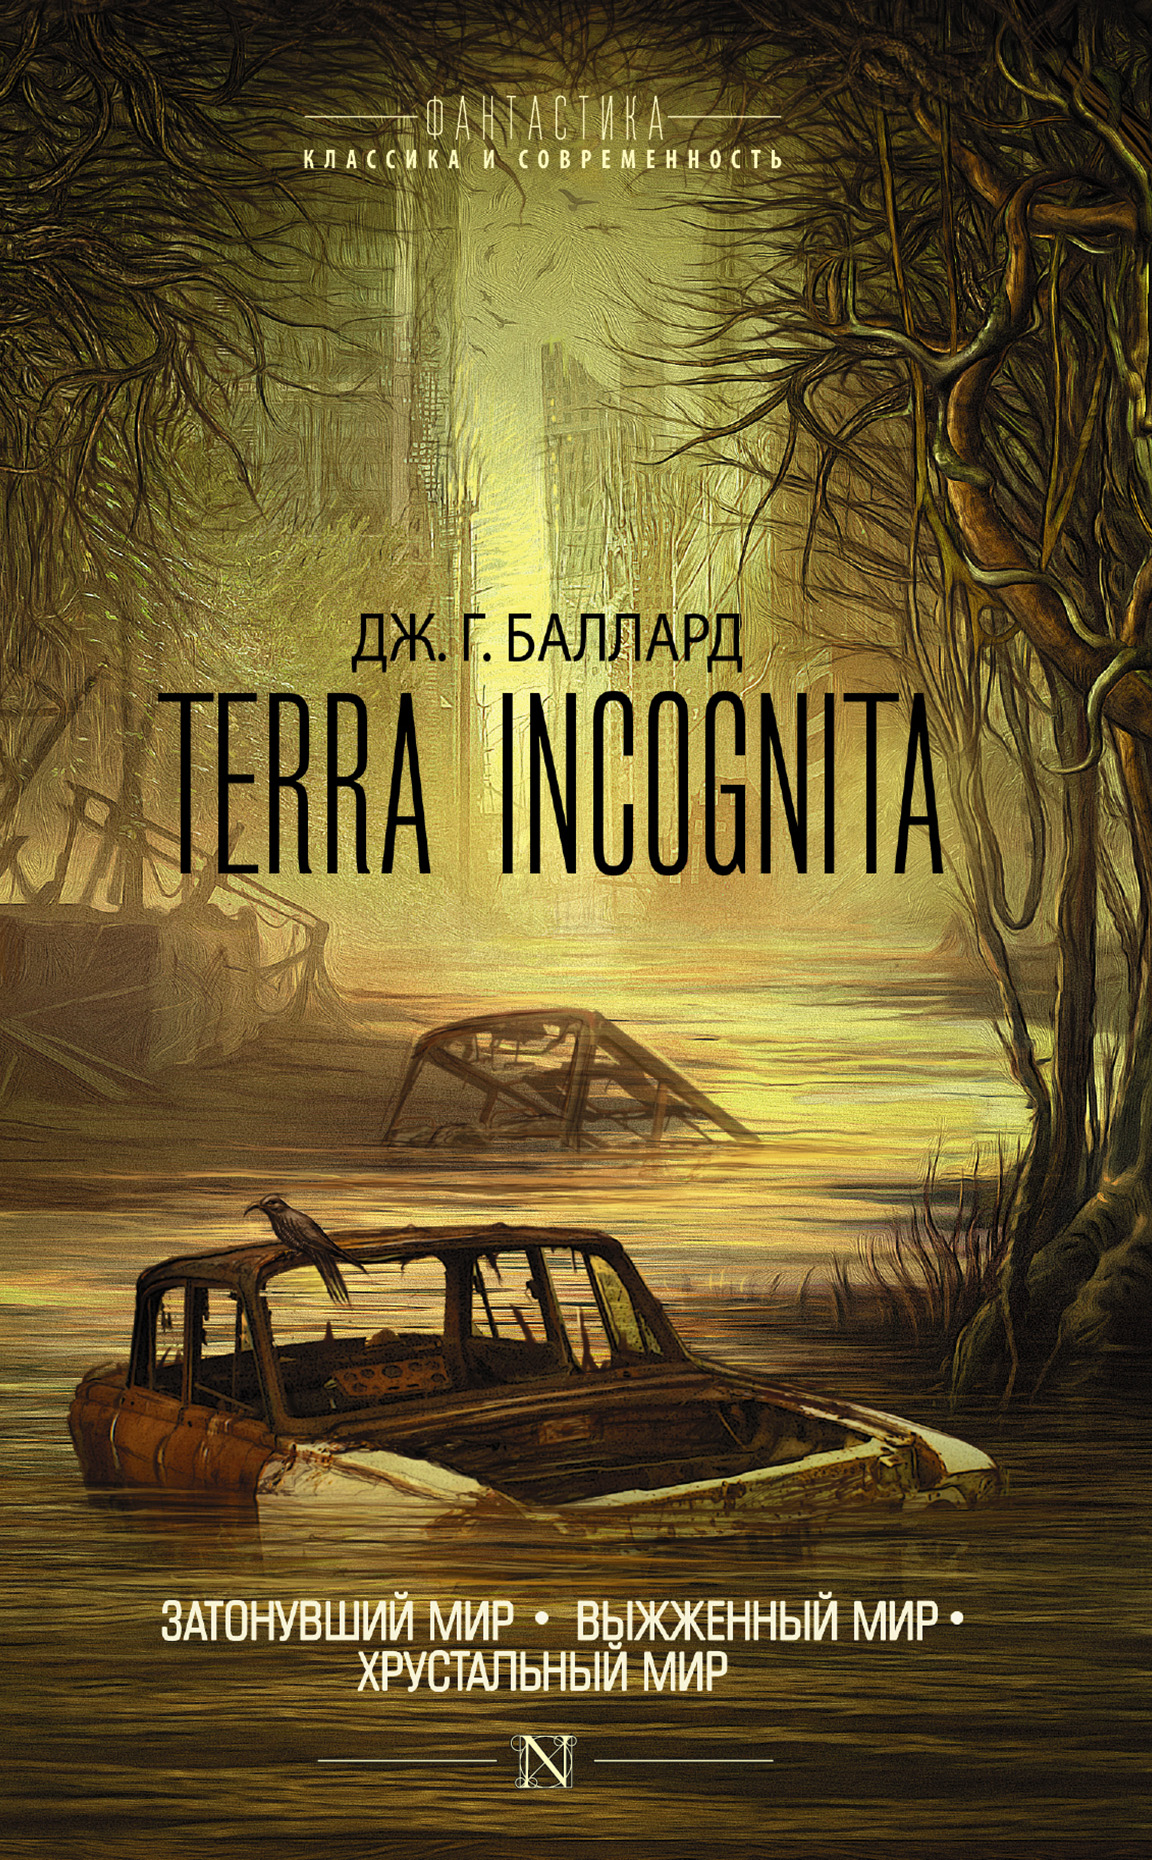 Terra Incognita:Затонувший мир. Выжженный мир. Хрустальный мир (сборник)